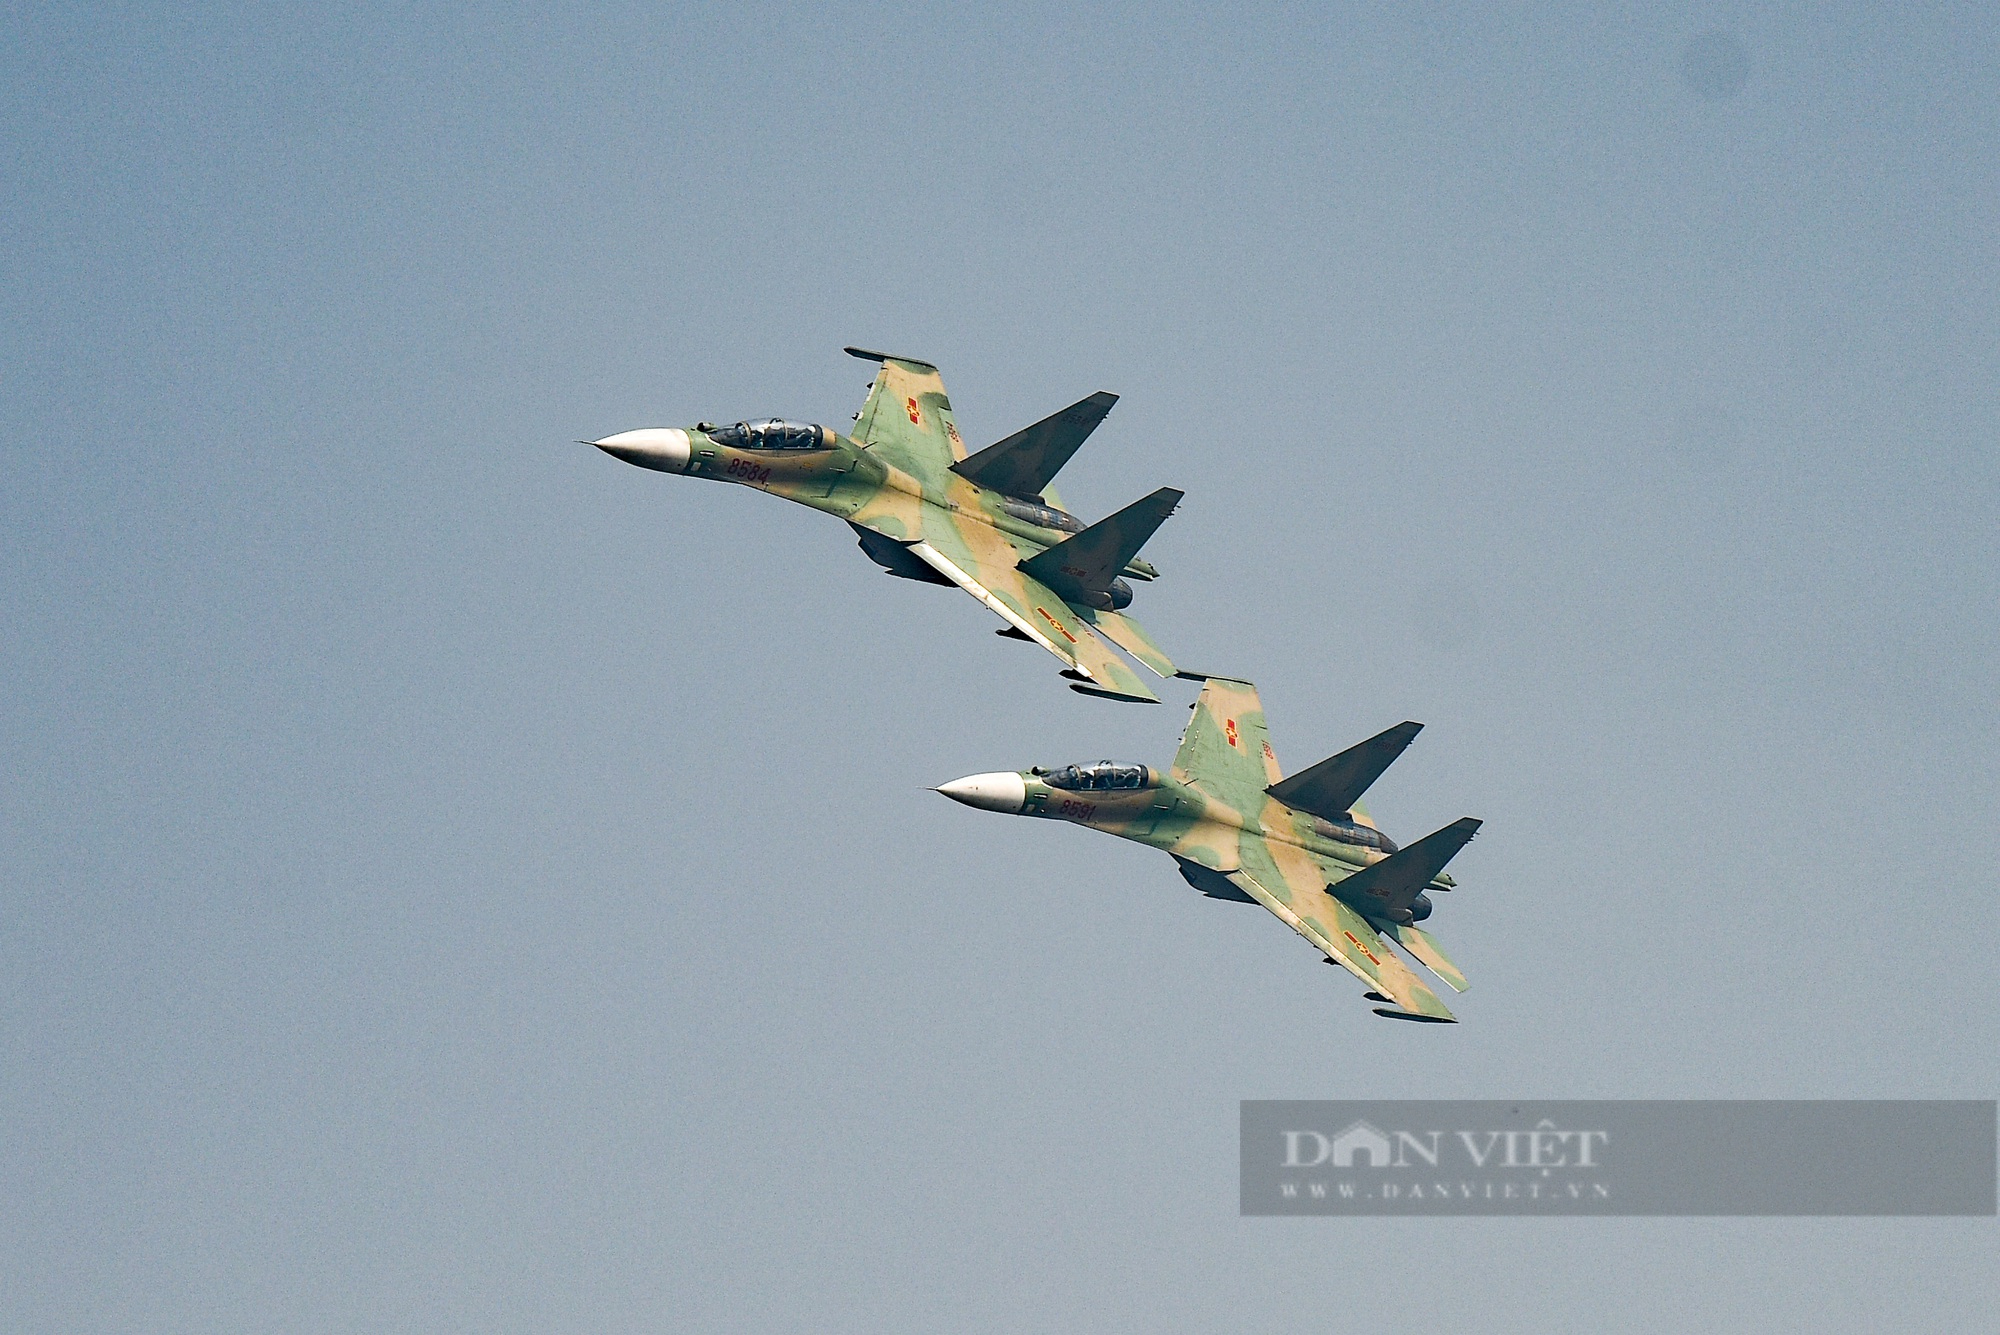 Những hình ảnh về hổ mang chúa Su-30MK2 vô cùng ấn tượng và đầy mạnh mẽ. Hãy cùng đến với những căn cứ quân sự và chiêm ngưỡng khả năng bay đầy uy lực của loại máy bay này.